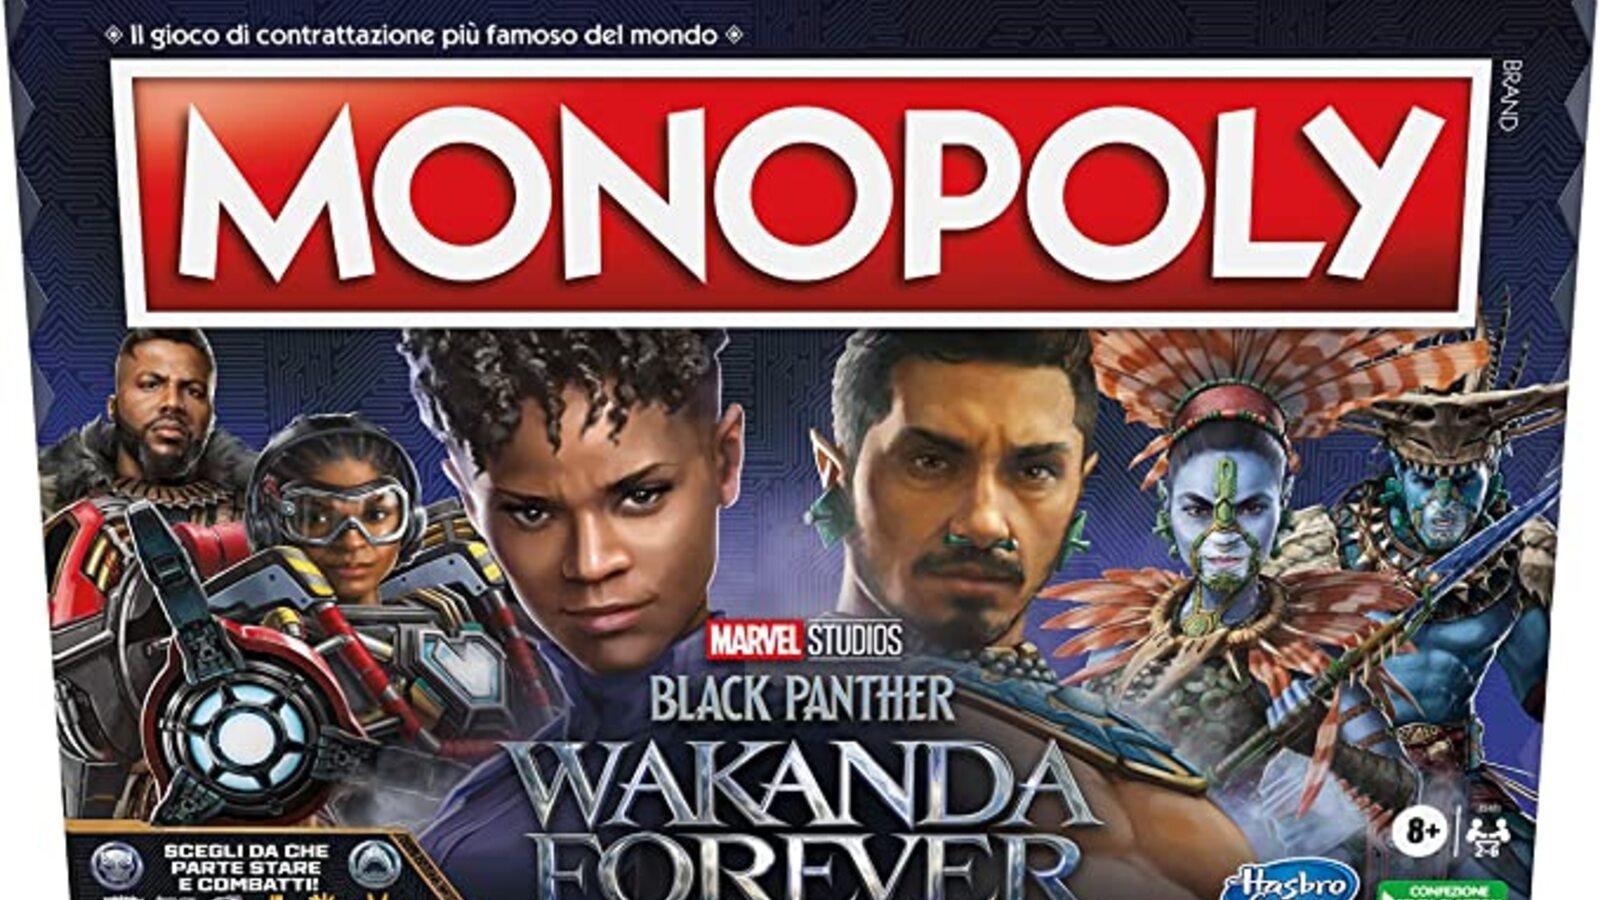 Black Panther: Wakanda Forever, il Monopoly ispirato al celebre film Marvel è a un prezzo stracciato su Amazon